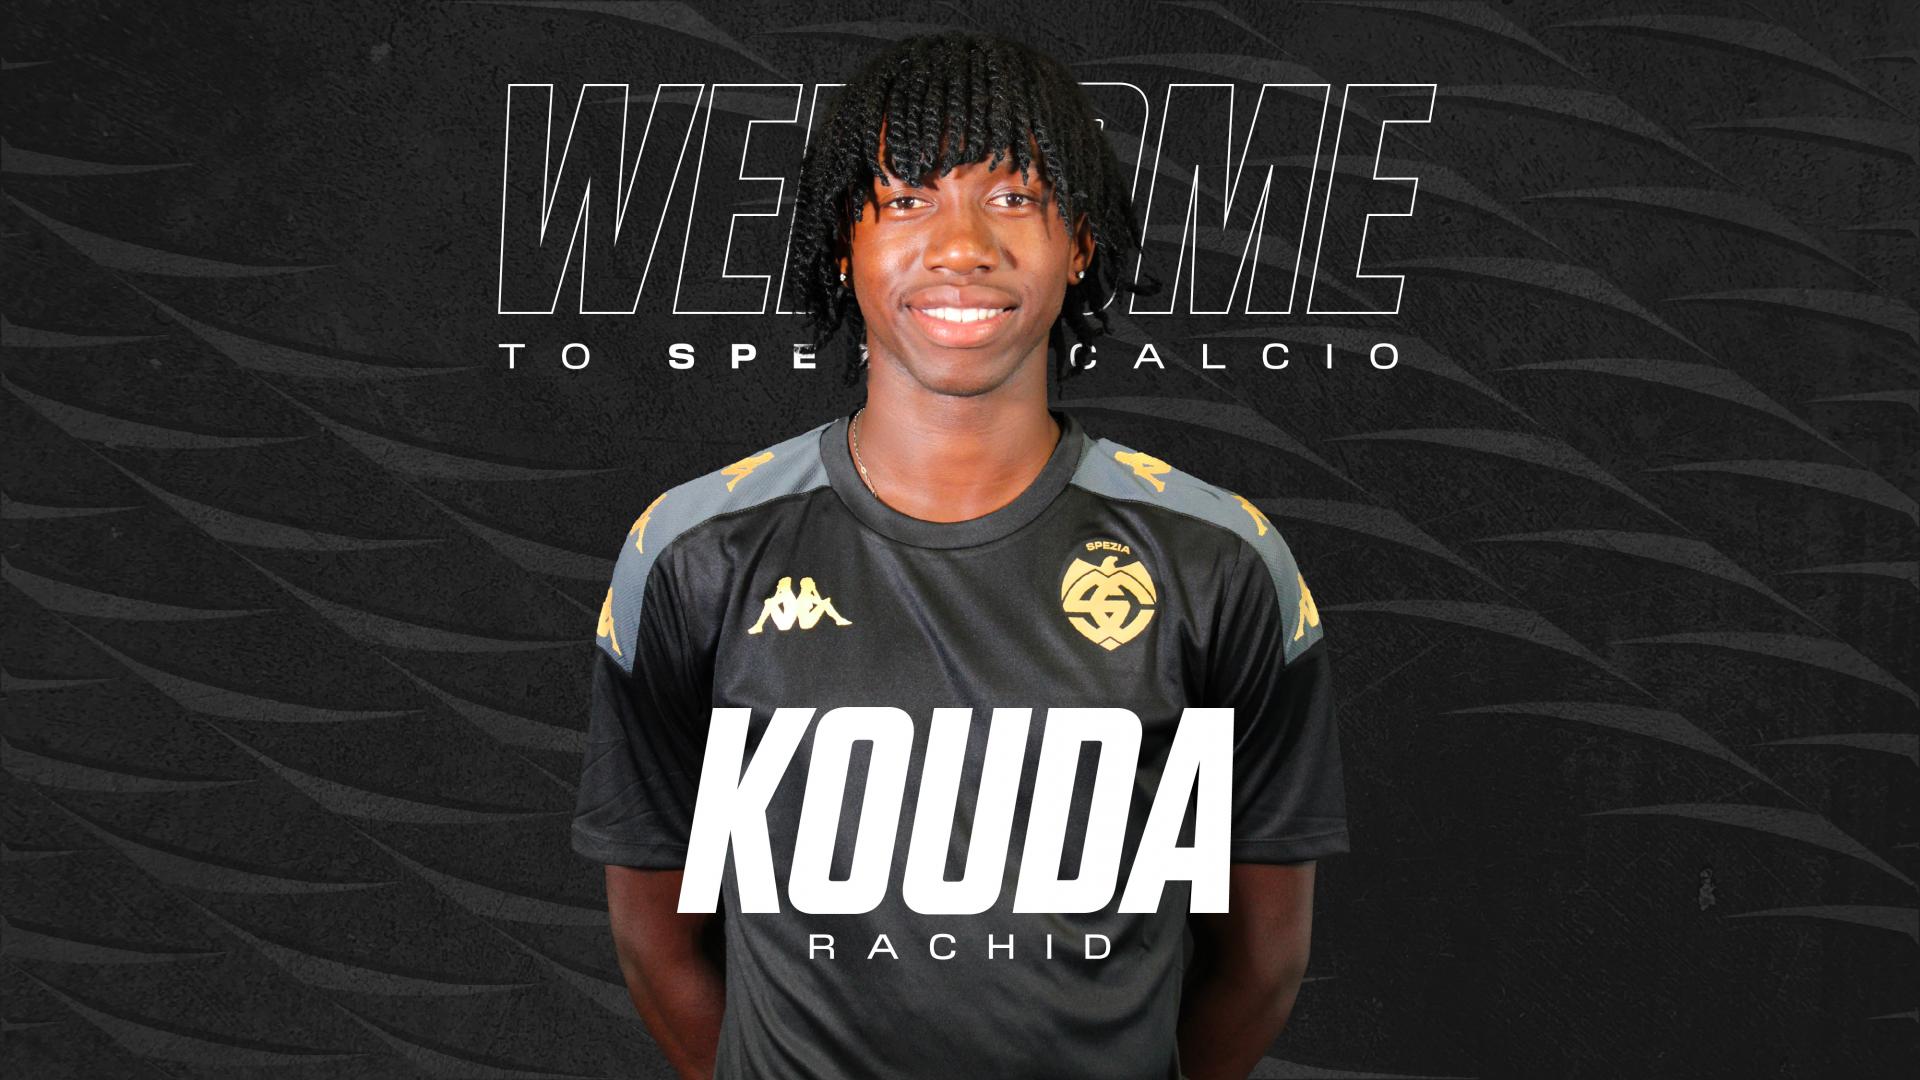 Ufficiale | Rachid Kouda è un nuovo calciatore dello Spezia